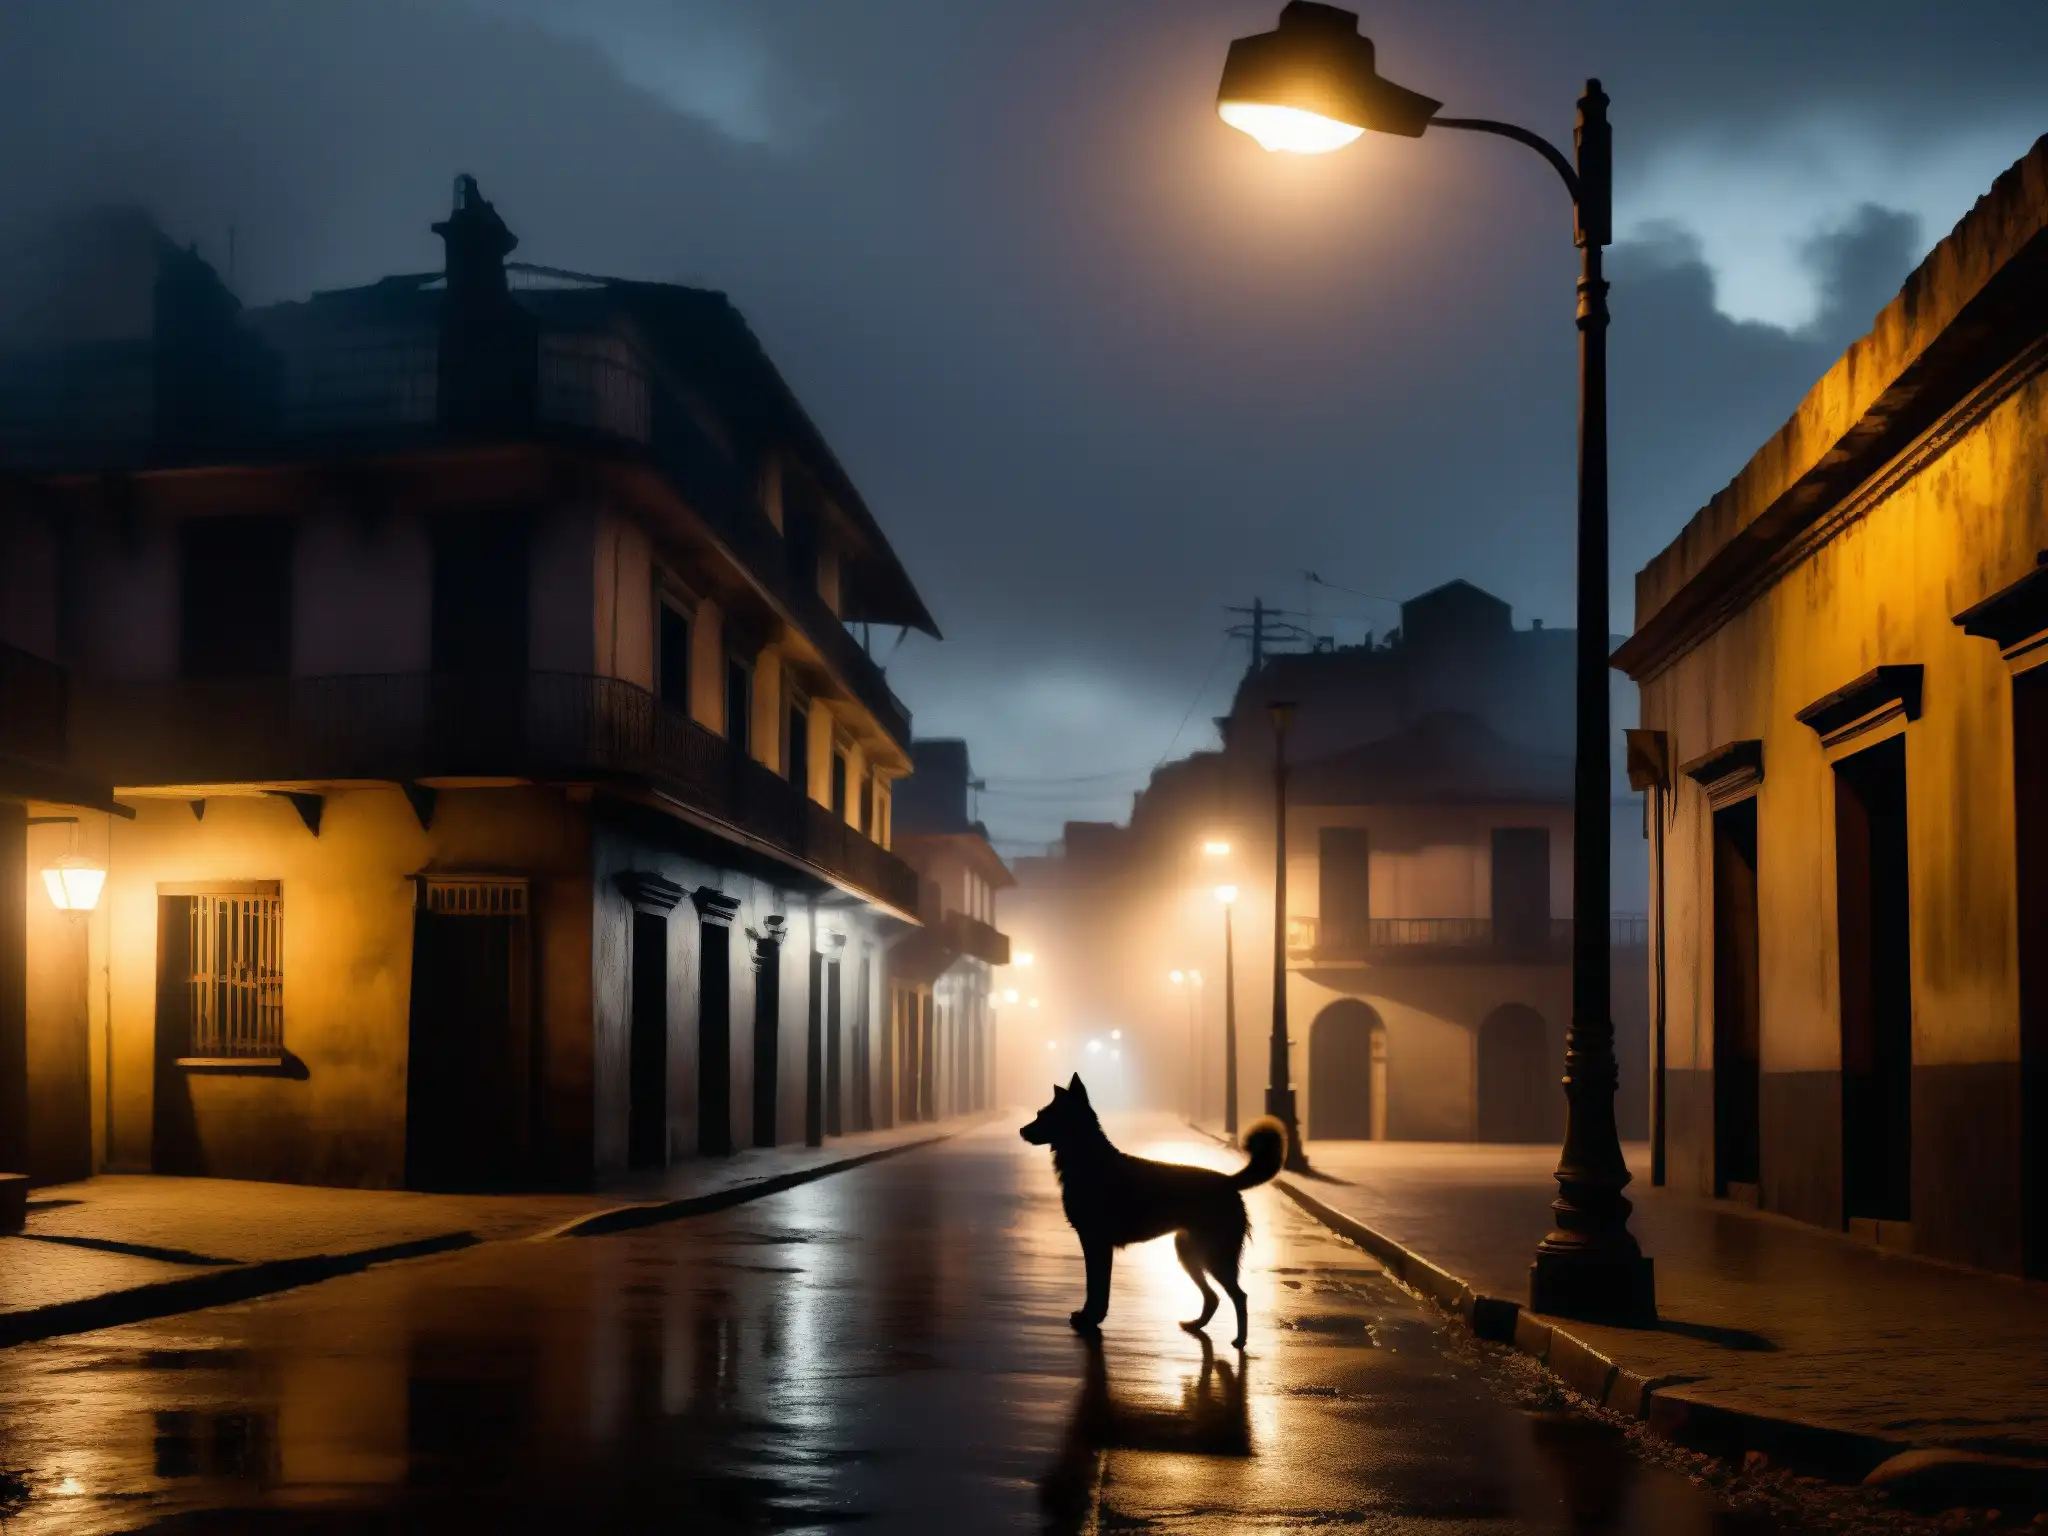 En la oscuridad de una misteriosa calle sudamericana, un perro bajo la luz titilante revela la realidad paranormal noches sudamericanas